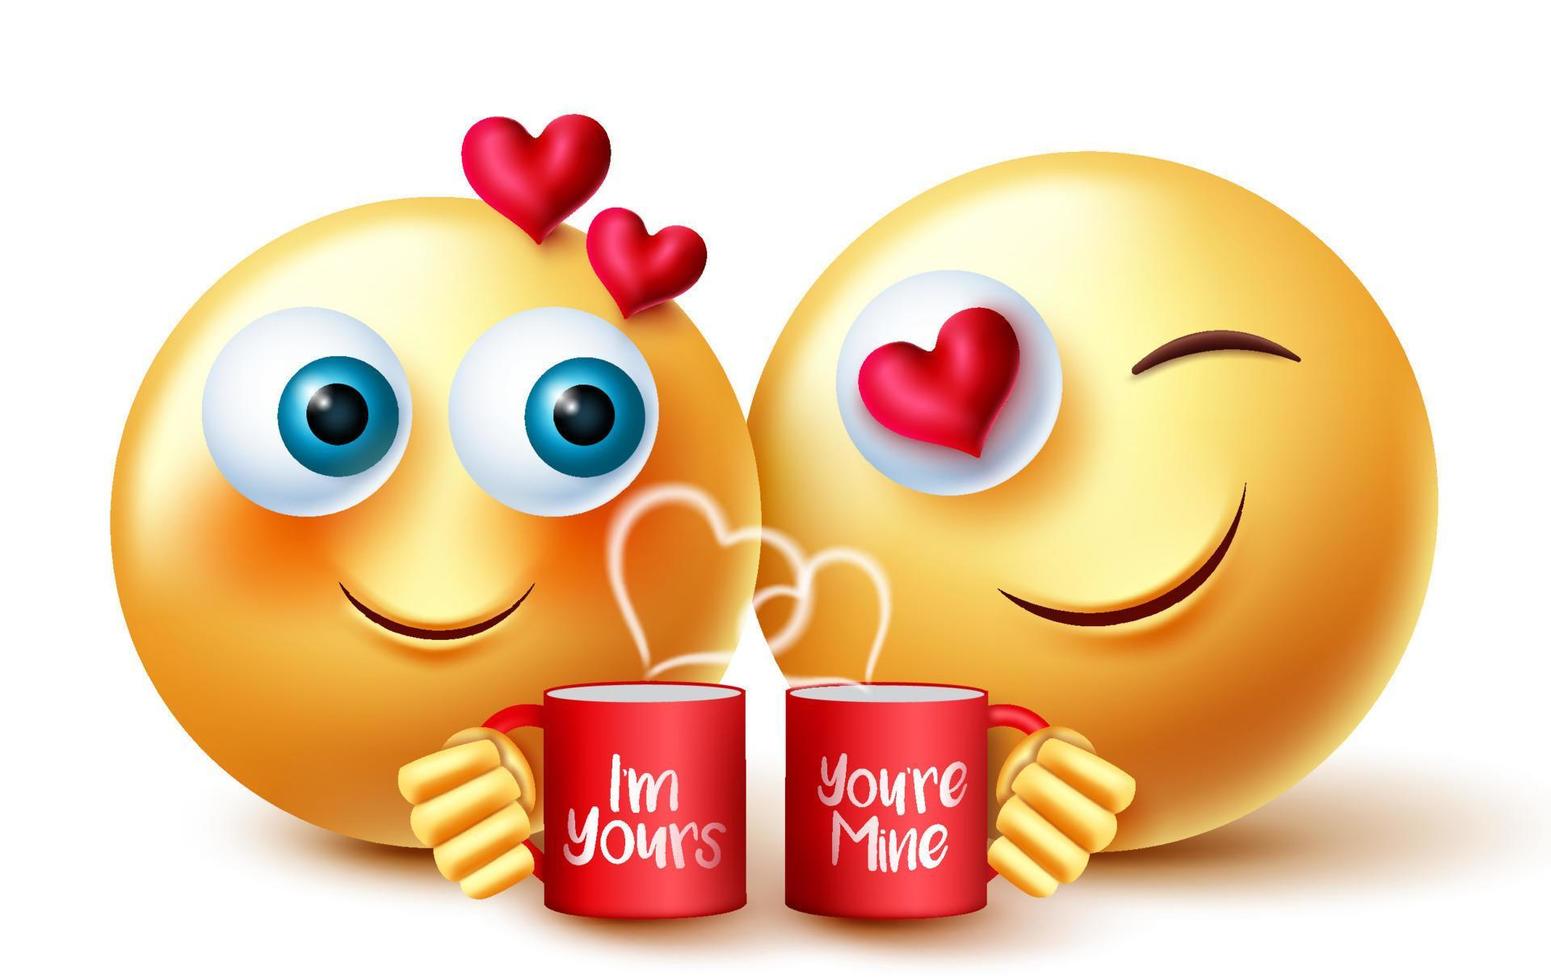 conception de vecteur d'amant d'emojis valentines. emoji inlove caractère tenant une tasse de café avec une expression de sentiments romantiques pour l'amour des émoticônes du concept de la Saint-Valentin. illustration vectorielle.